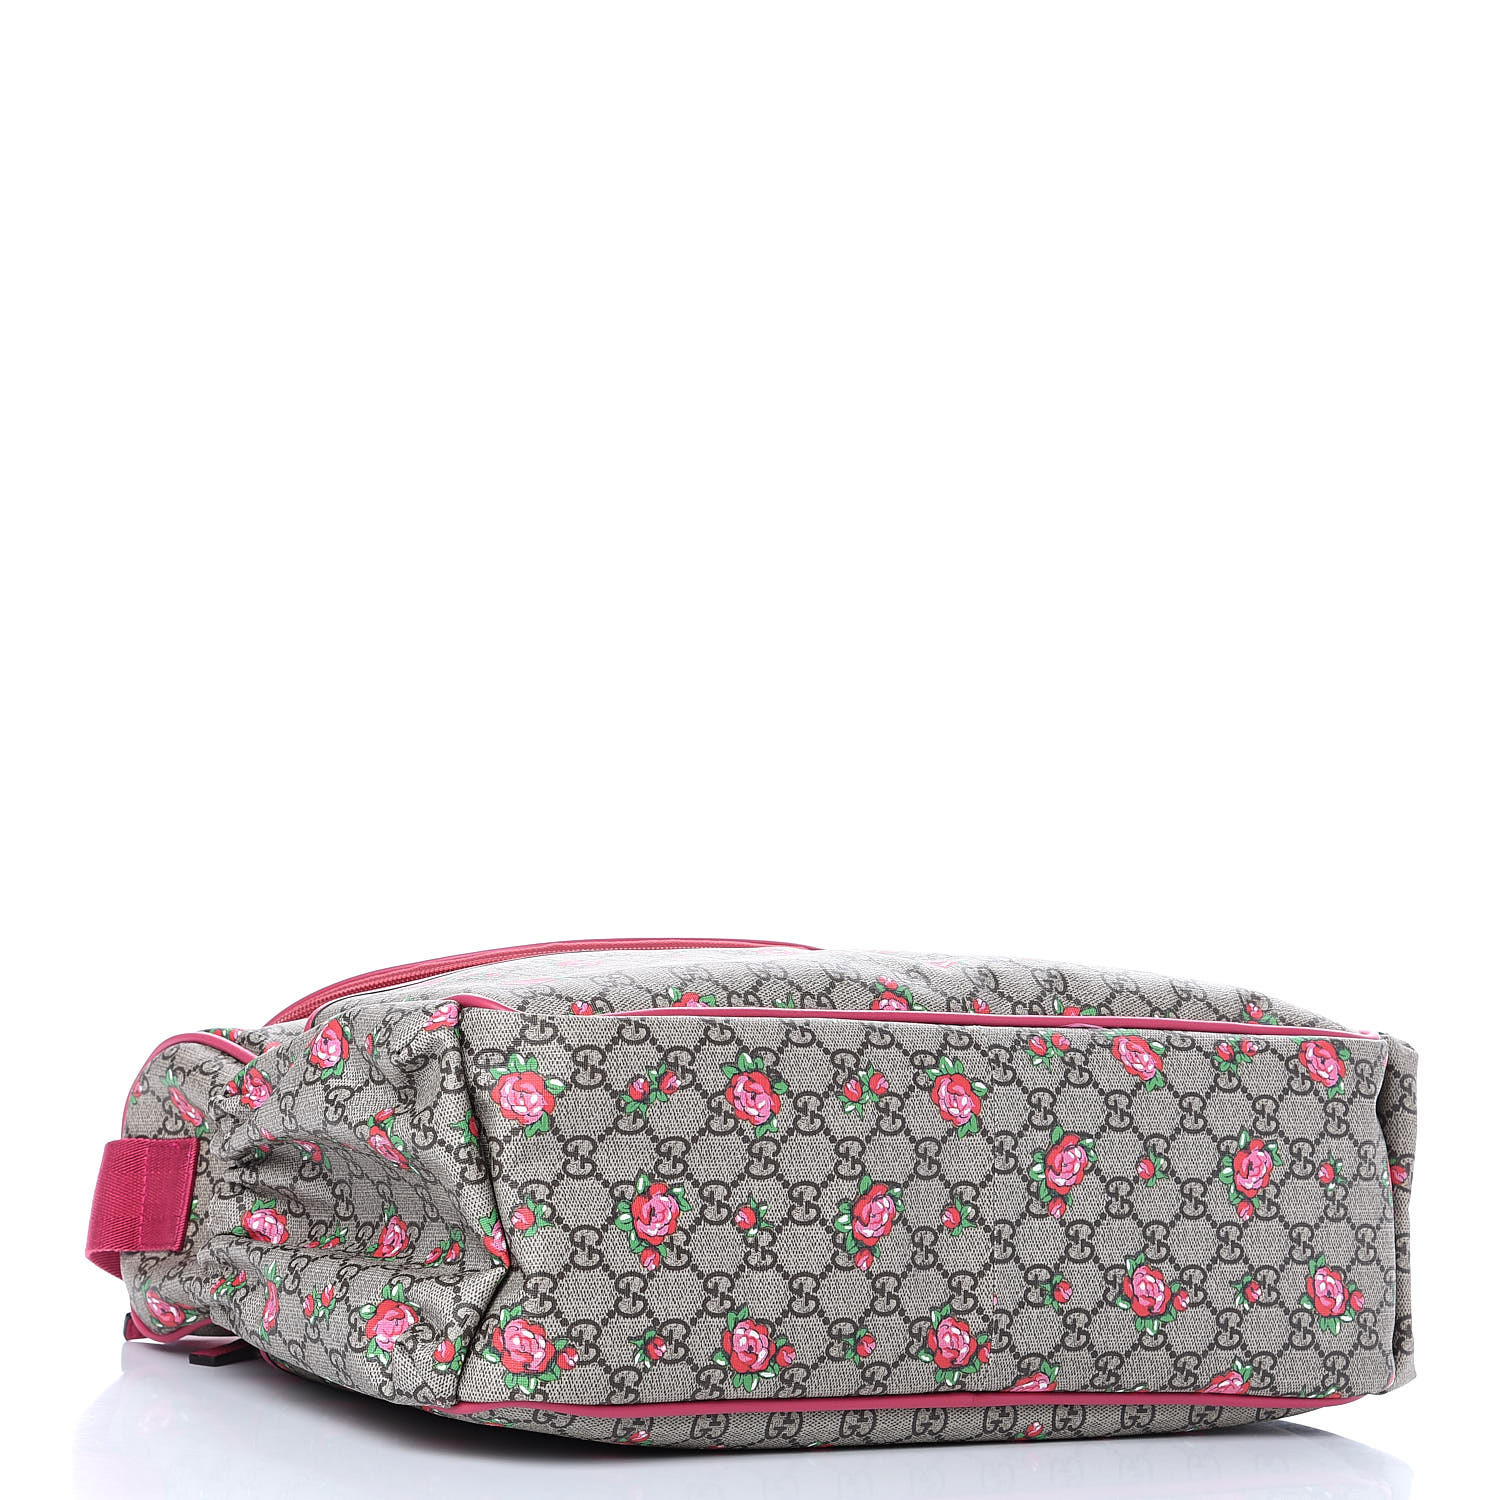 GUCCI GG Supreme Monogram Rose Bud Diaper Bag Pink 416715